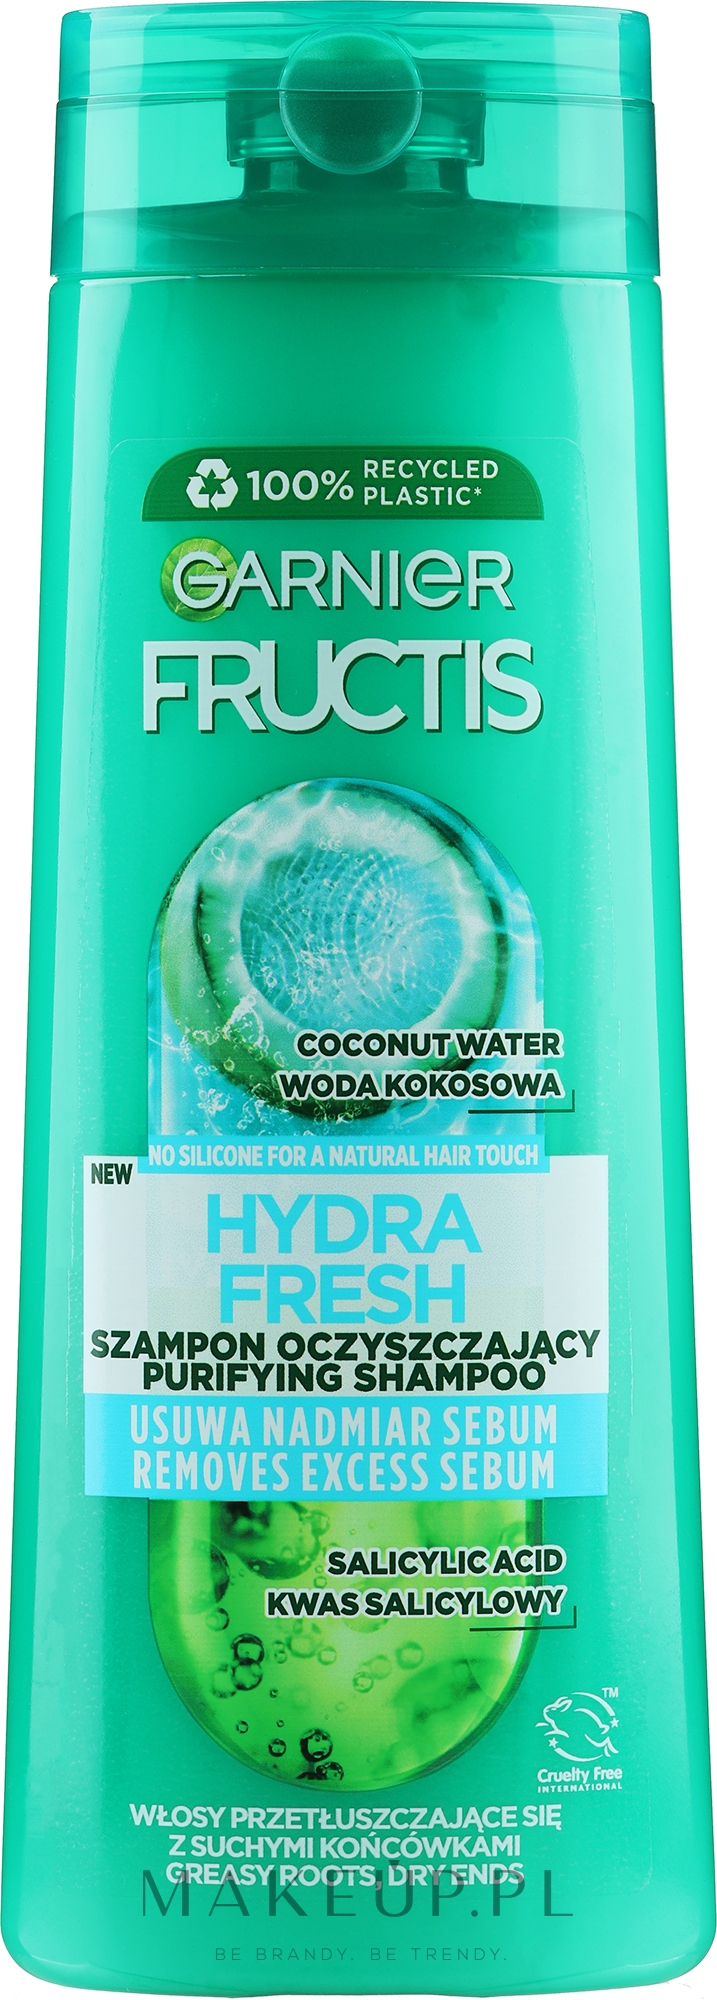 szampon do włosów fructis opimia